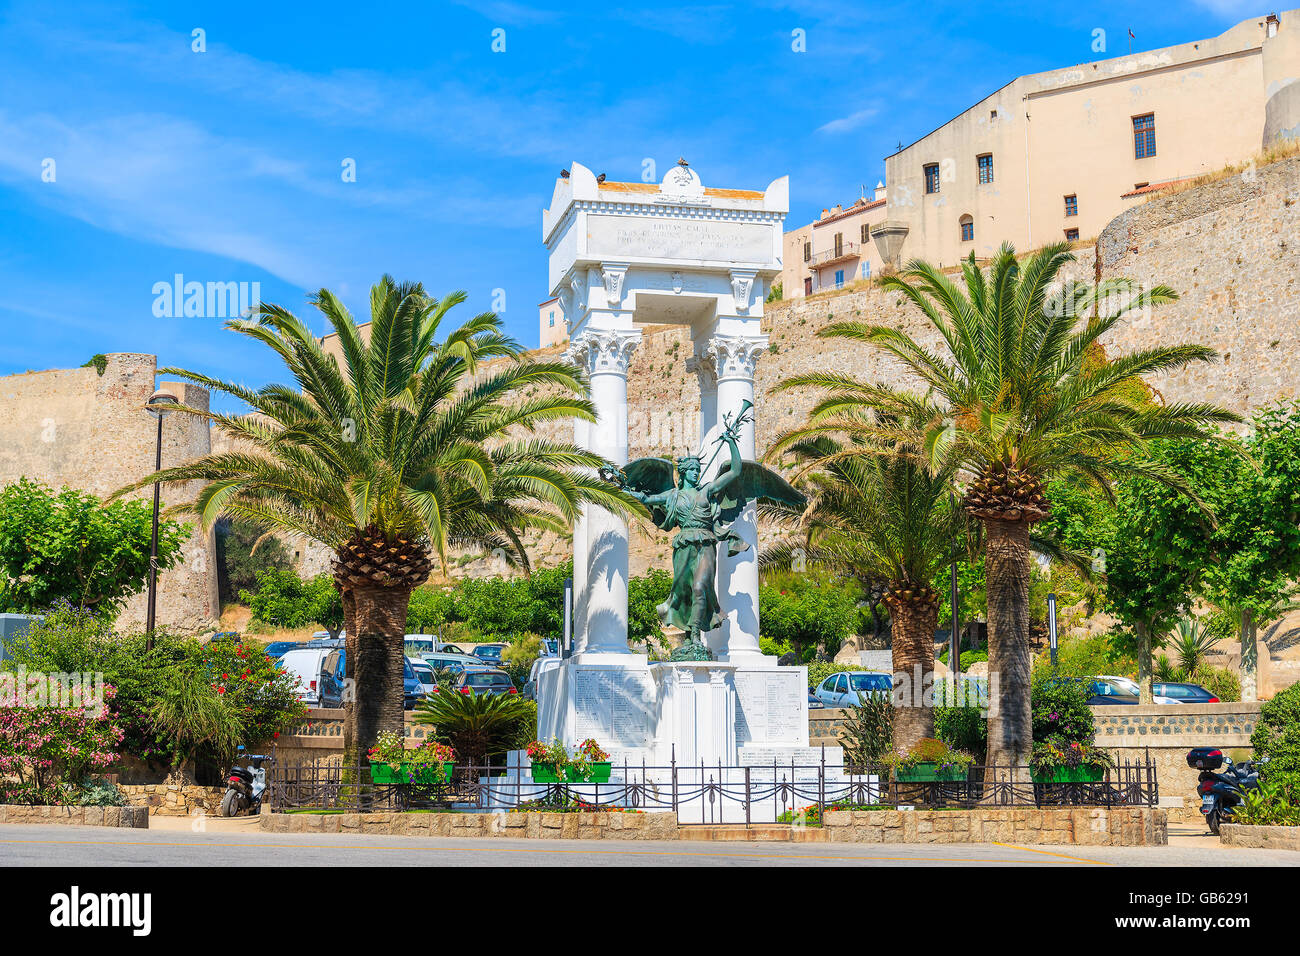 CALVI, Isola di Corsica- giu 29, 2015: la statua di Fremiet fu costruito da un iniziativa dell'architetto Clerambault. Essa è in marmo Foto Stock